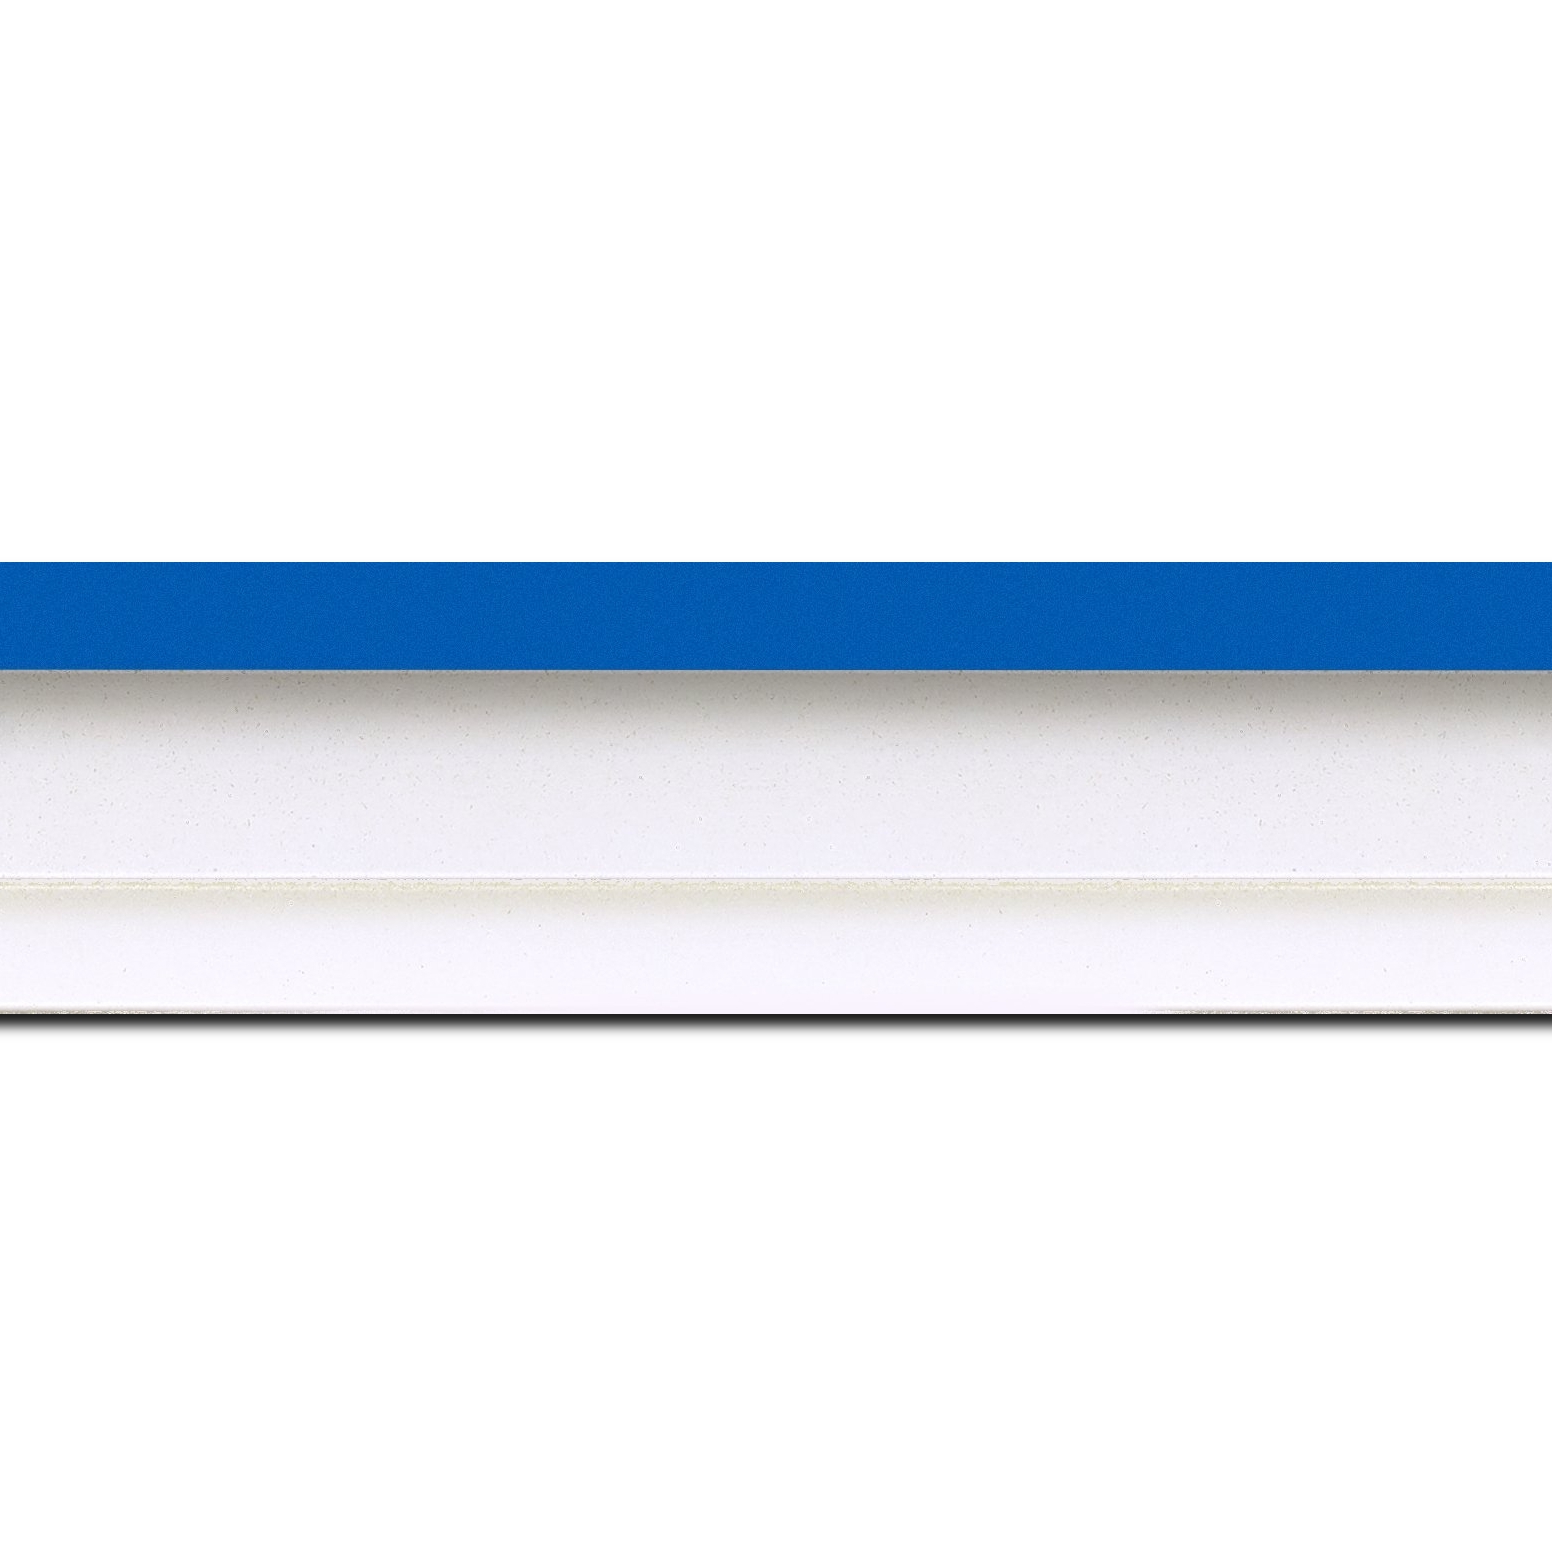 Pack par 12m, bois caisse américaine profil escalier largeur 4.4cm blanc mat filet bleu (spécialement conçu pour les châssis d'une épaisseur jusqu’à 2.5cm )(longueur baguette pouvant varier entre 2.40m et 3m selon arrivage des bois)